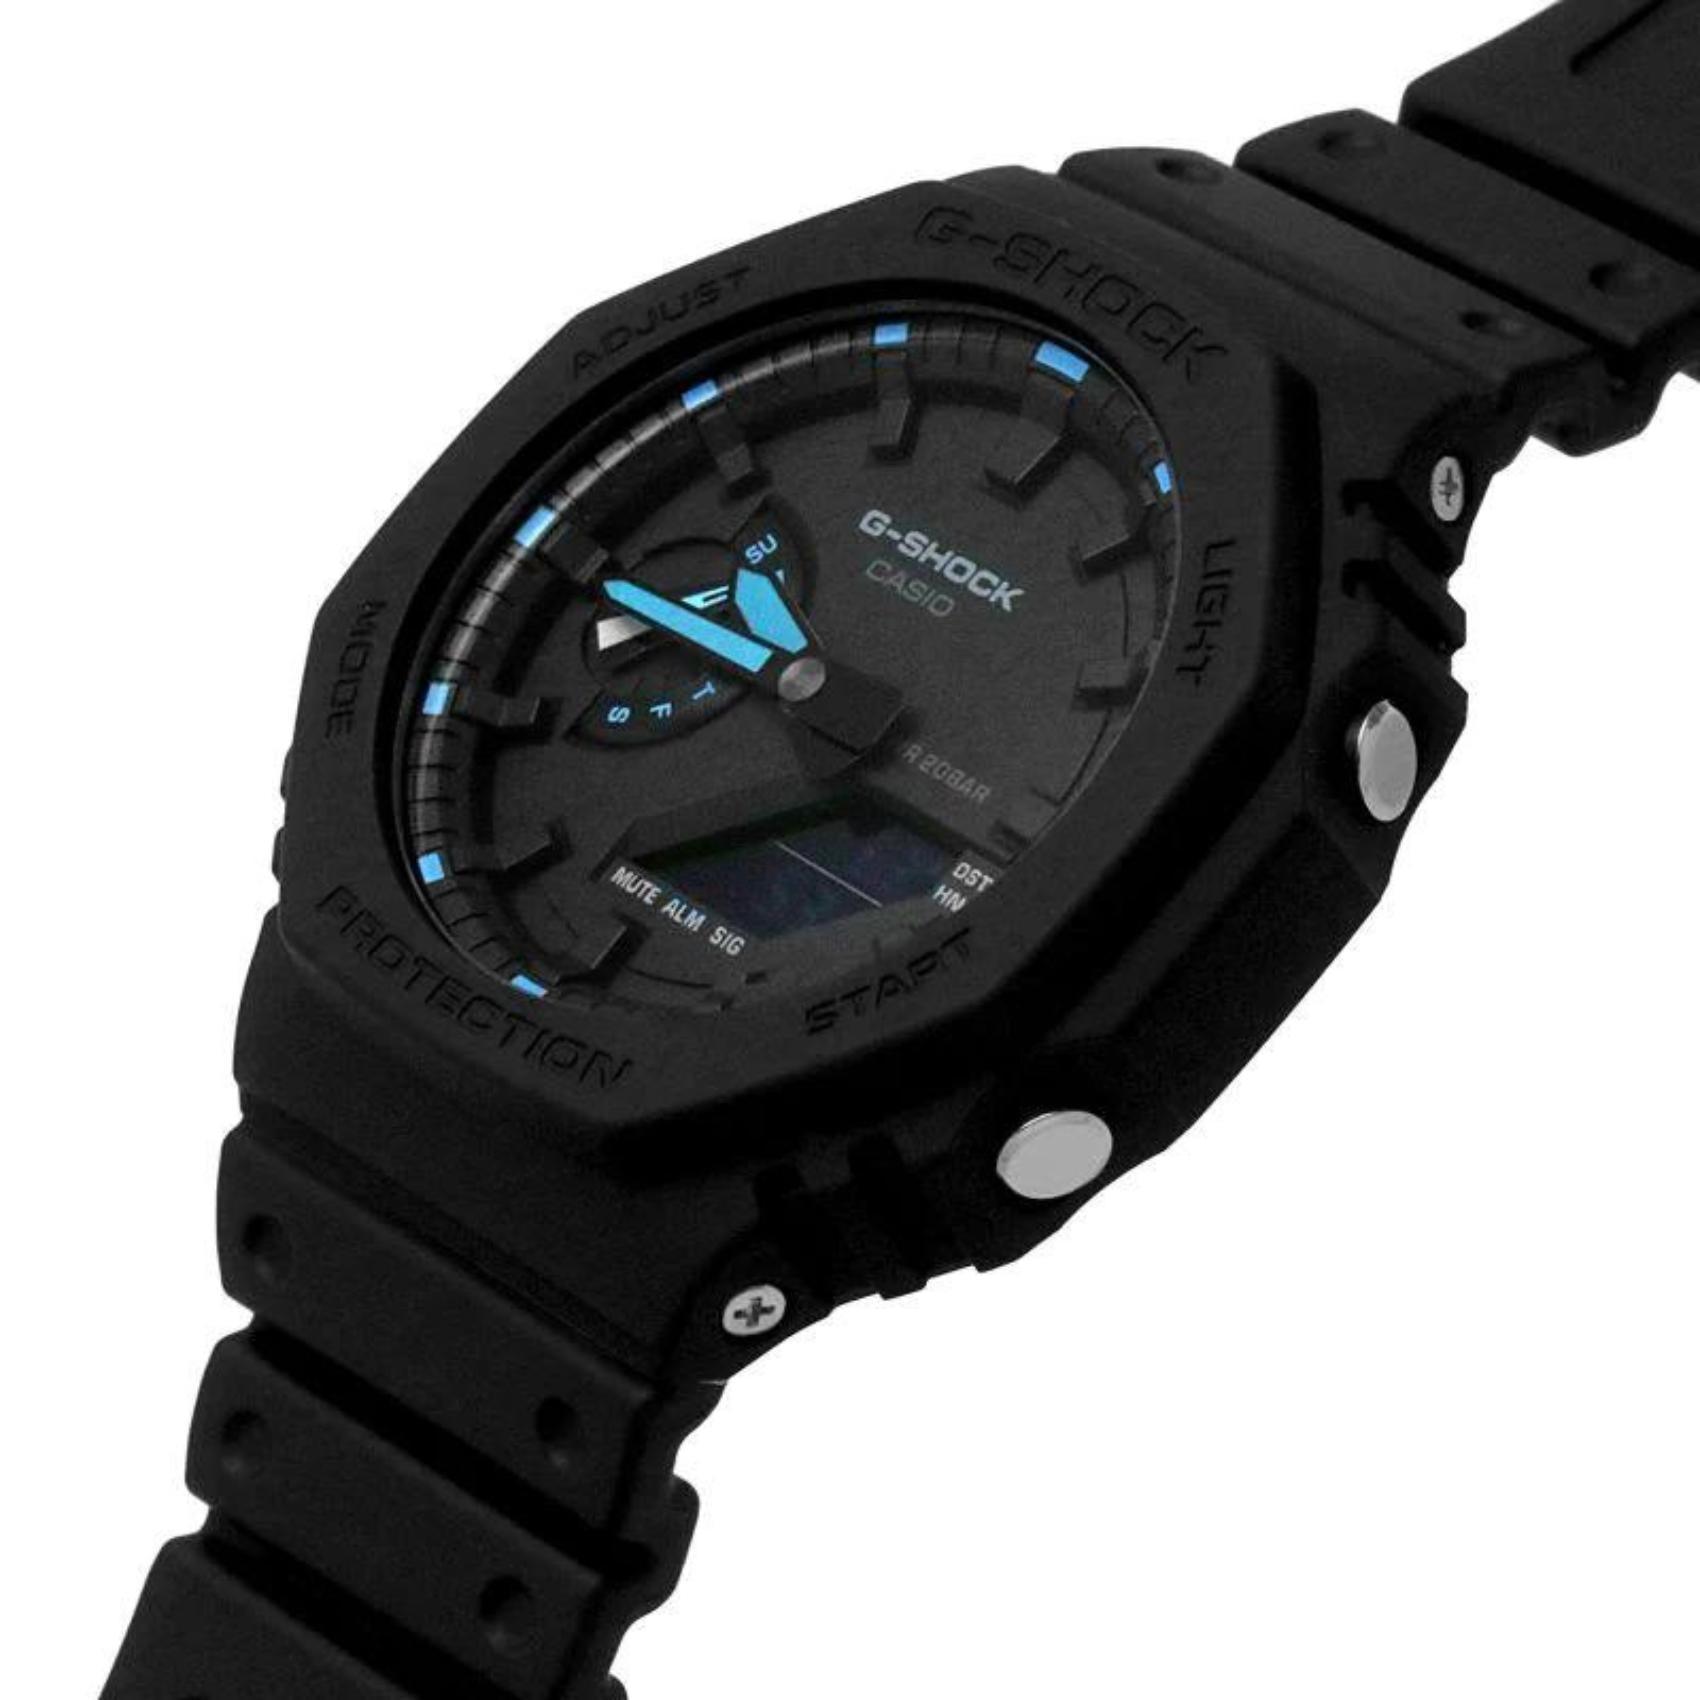 Ρολόι χρονογράφος Casio G-Shock GA-2100-1A2ER με μαύρο καουτσούκ λουράκι, μαύρο καντράν σε οκτάγωνο σχημα με ψηφιακή ένδειξη και στεγανότητα 20ATM-200Μ.